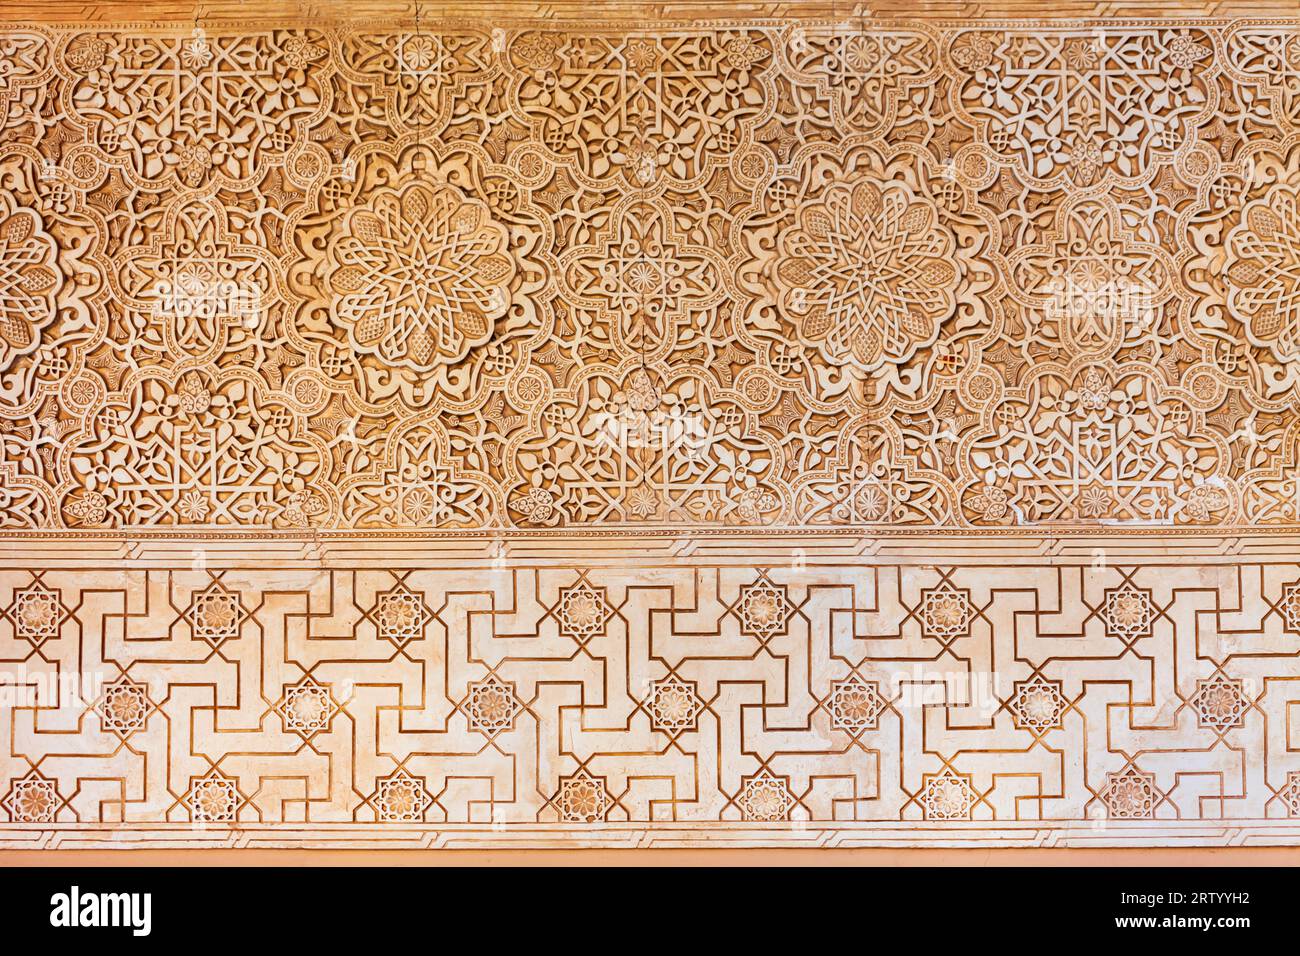 Grenade, Espagne - 20 octobre 2021: L'intérieur du palais de l'Alhambra. Alhambra est un complexe de forteresse situé dans la ville de Grenade, en Andalousie, en Espagne. Banque D'Images